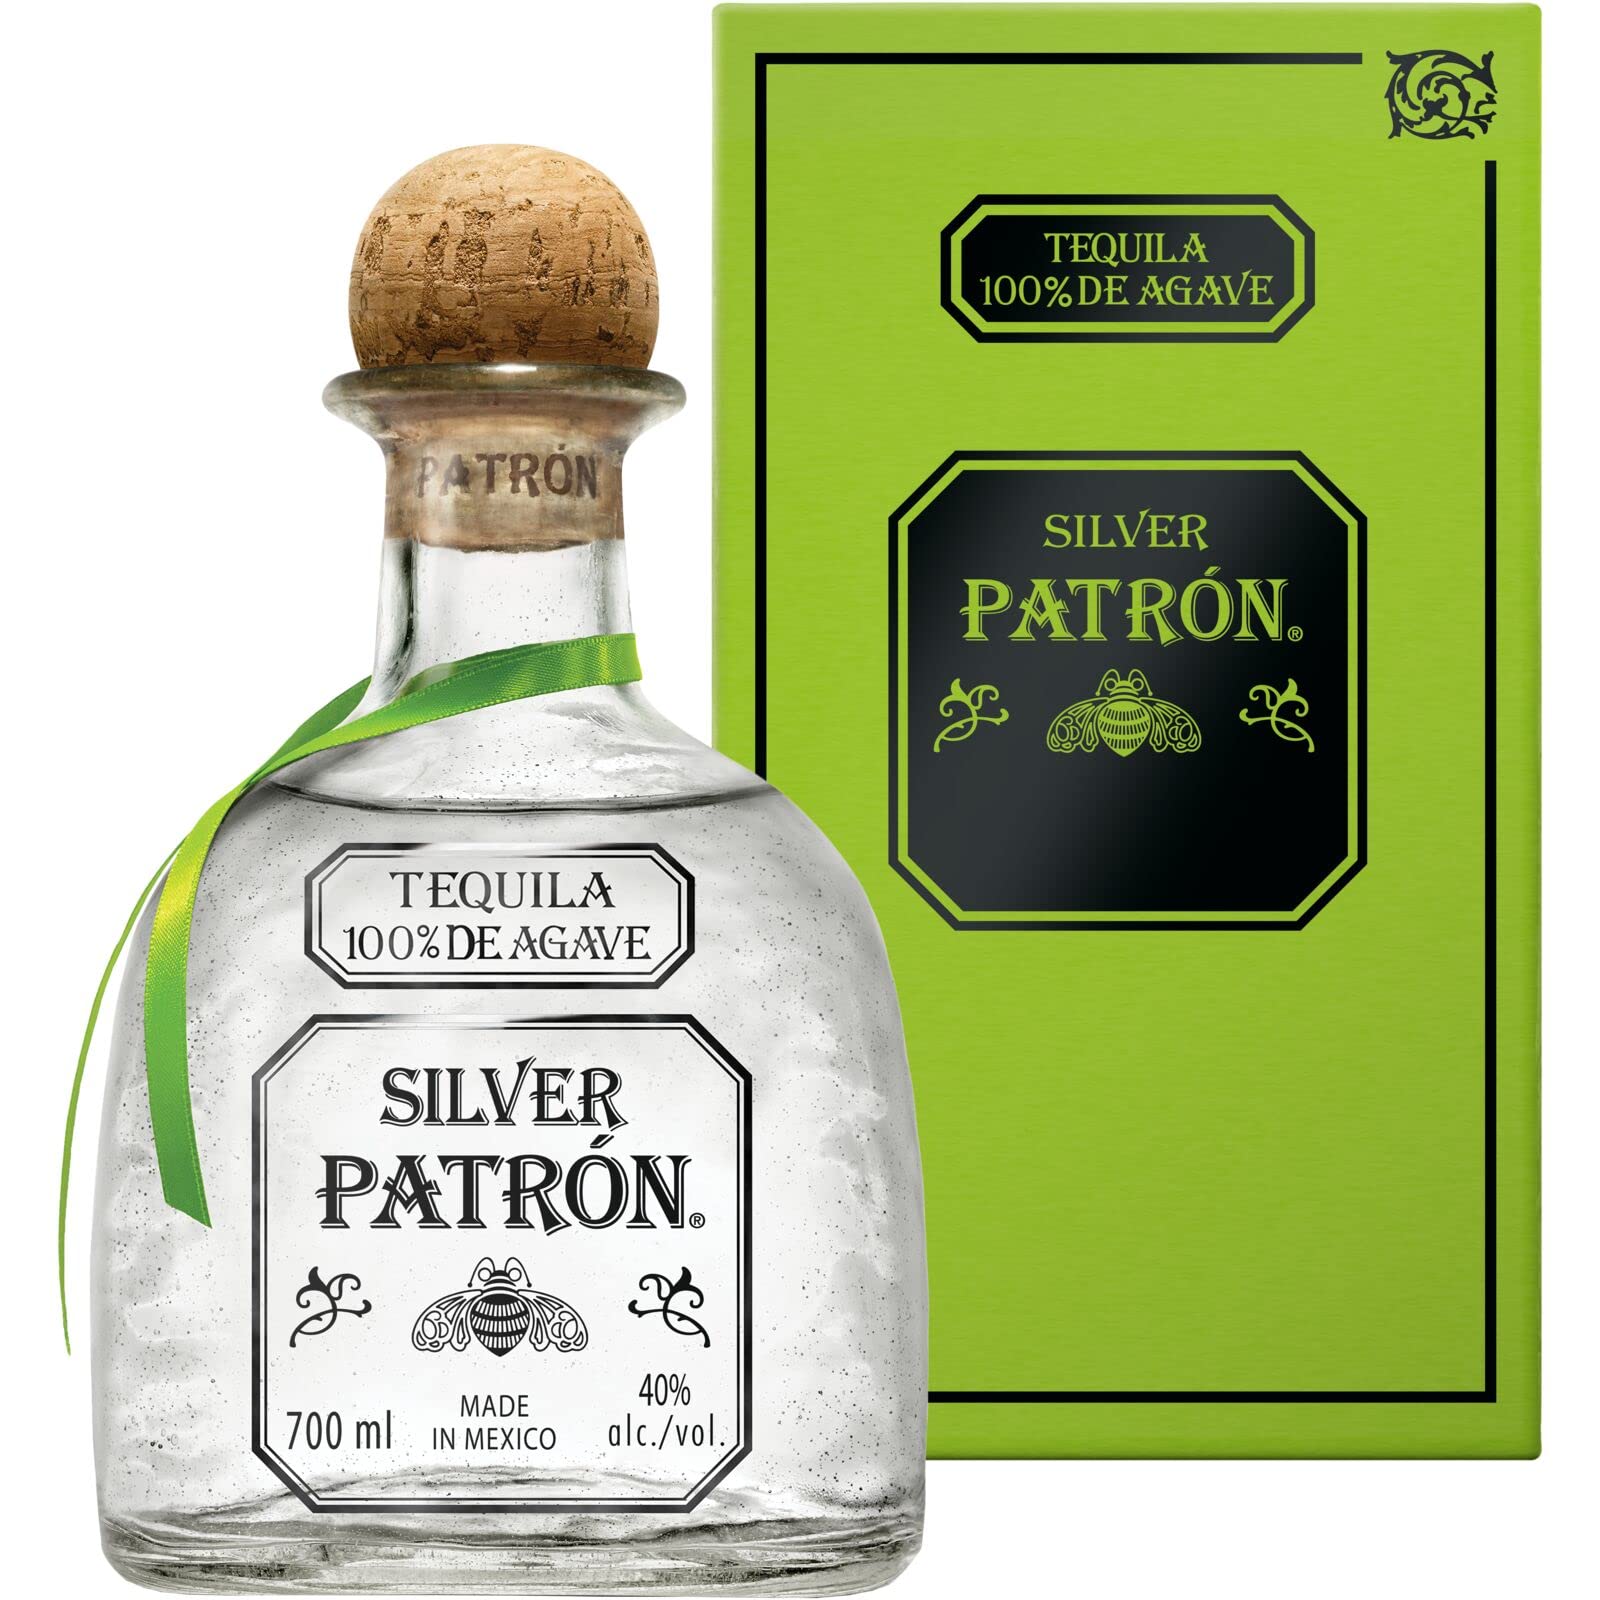 PATRÓN Silver Premium-Tequila aus 100 % besten blauen Weber-Agaven, in Mexiko in kleinen Chargen handdestilliert, perfekt für Margaritas & Cocktails, 40% Vol., 70 cl/700 ml